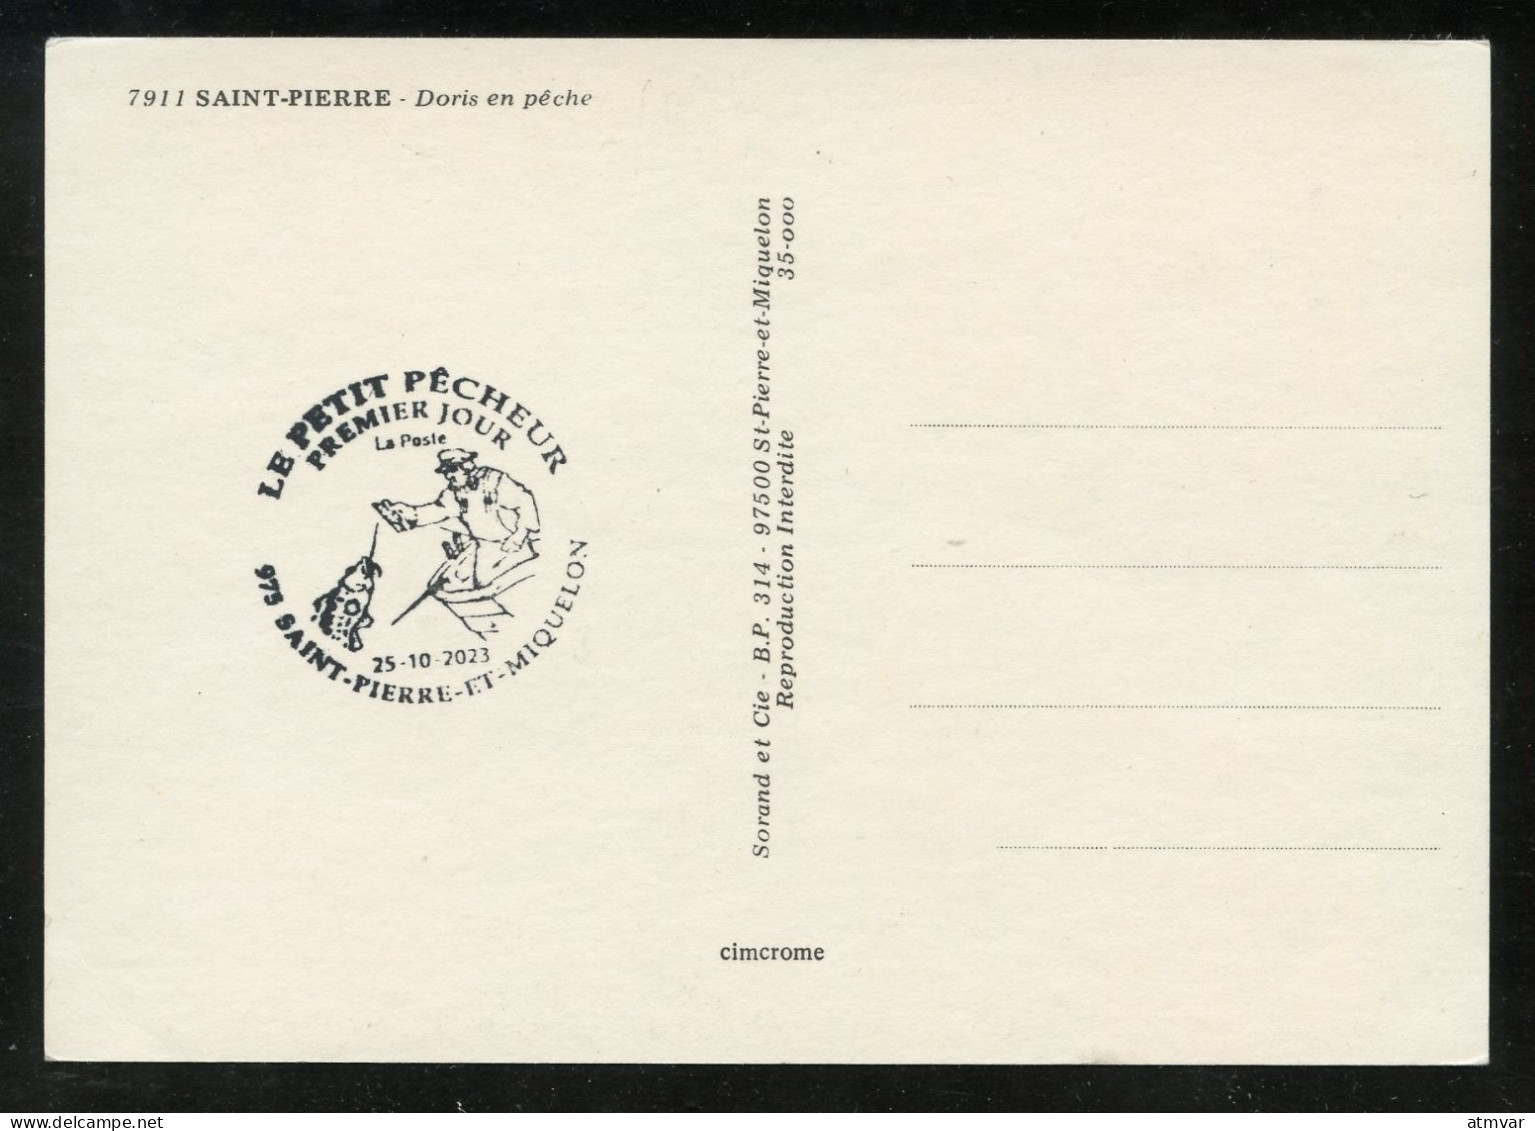 SAINT PIERRE ET MIQUELON (2023) Carte Maximum Card - Le Petit Pêcheur, Fishing Boat, Fisherman, Pêche - Tarjetas – Máxima